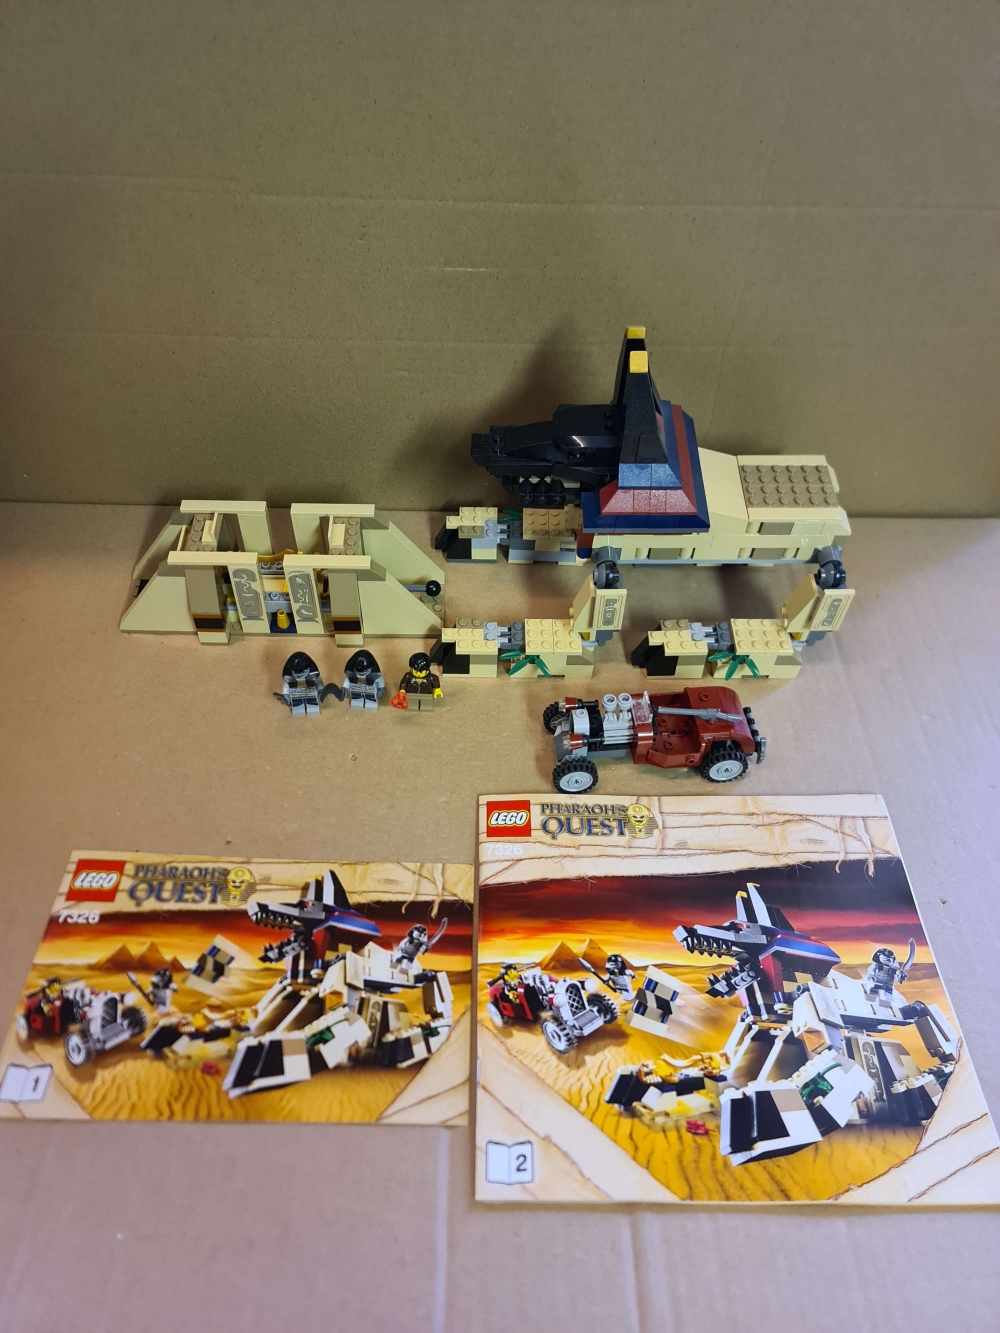 Sett 7326 fra Lego Pharao's Quest serien.

Som nytt. Komplett med manualer. 